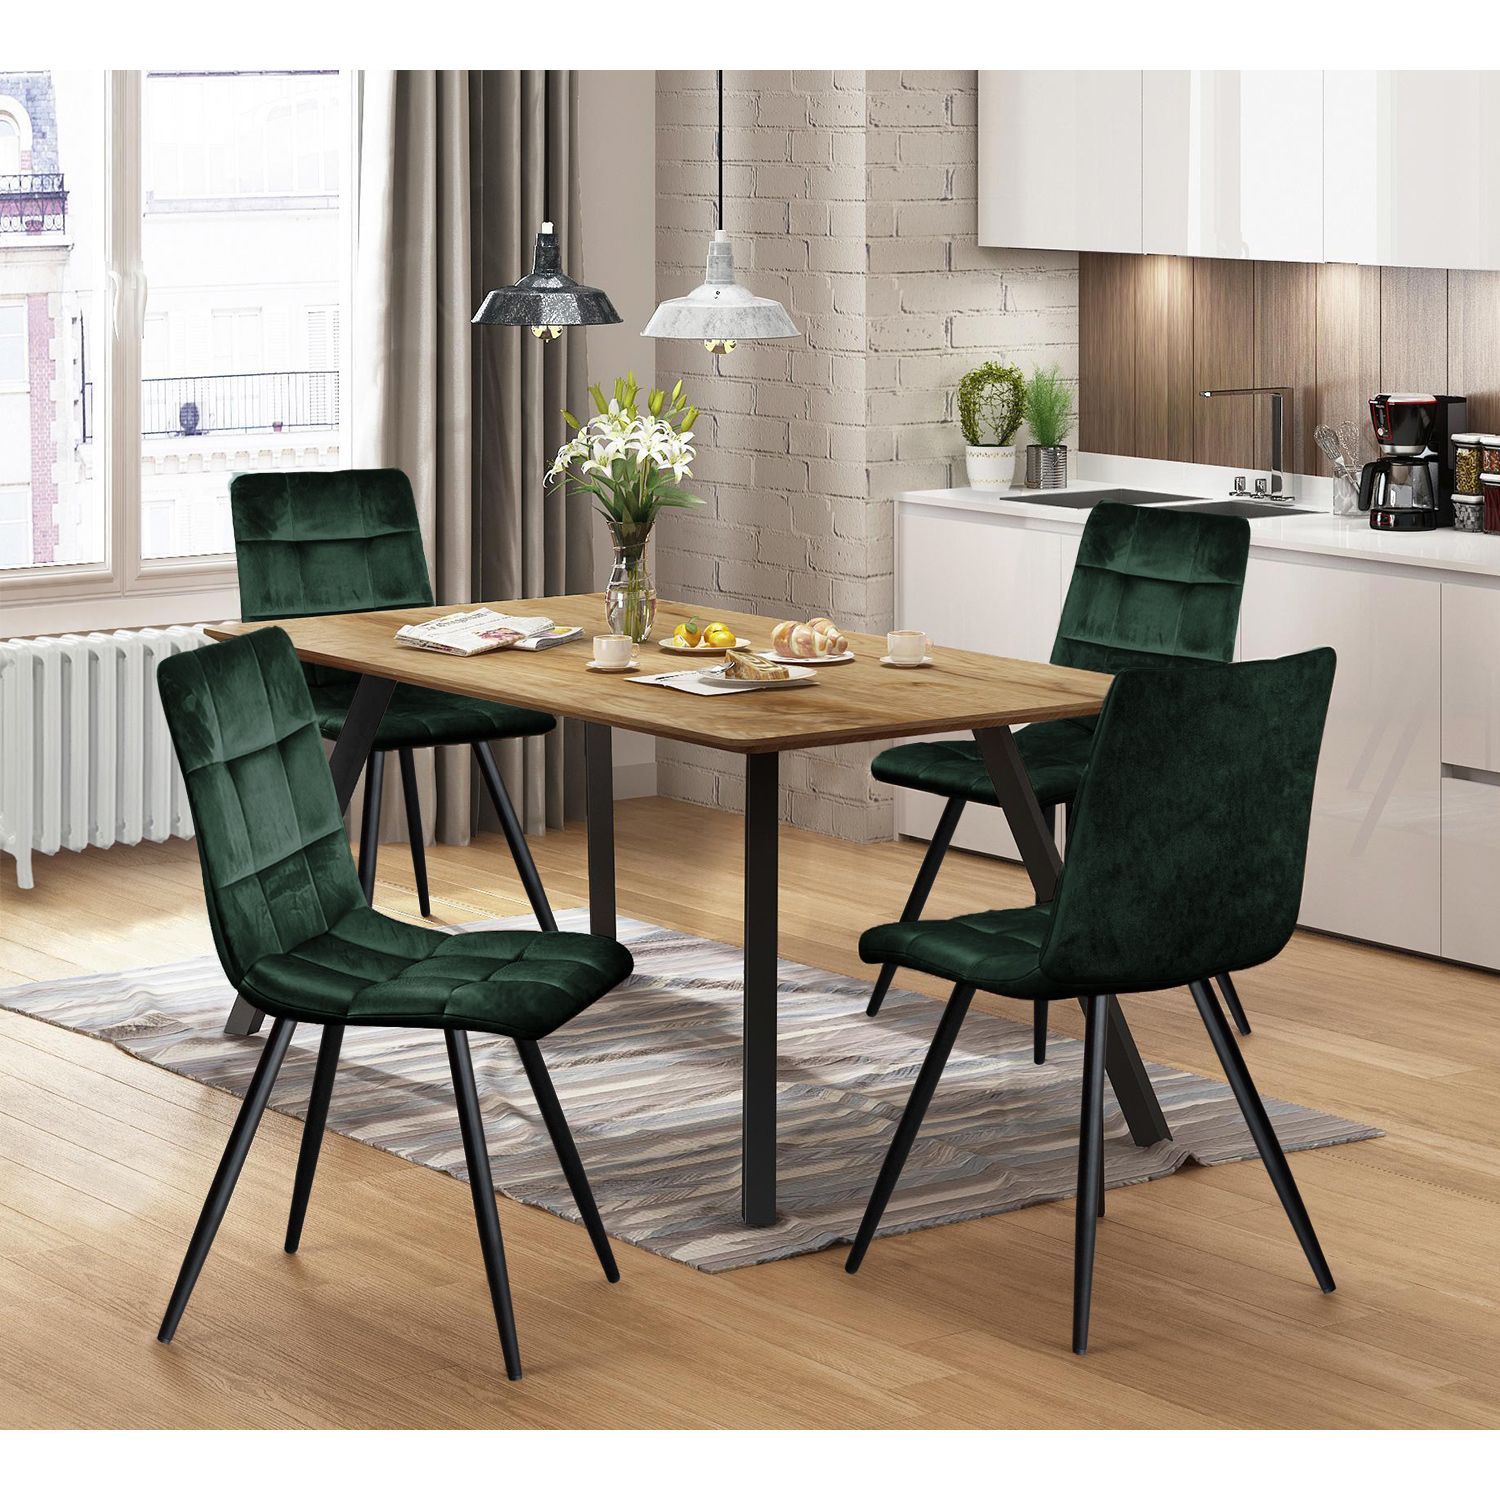 Jídelní stůl BERGEN dub + 4 židle BERGEN zelený samet - IDEA nábytek